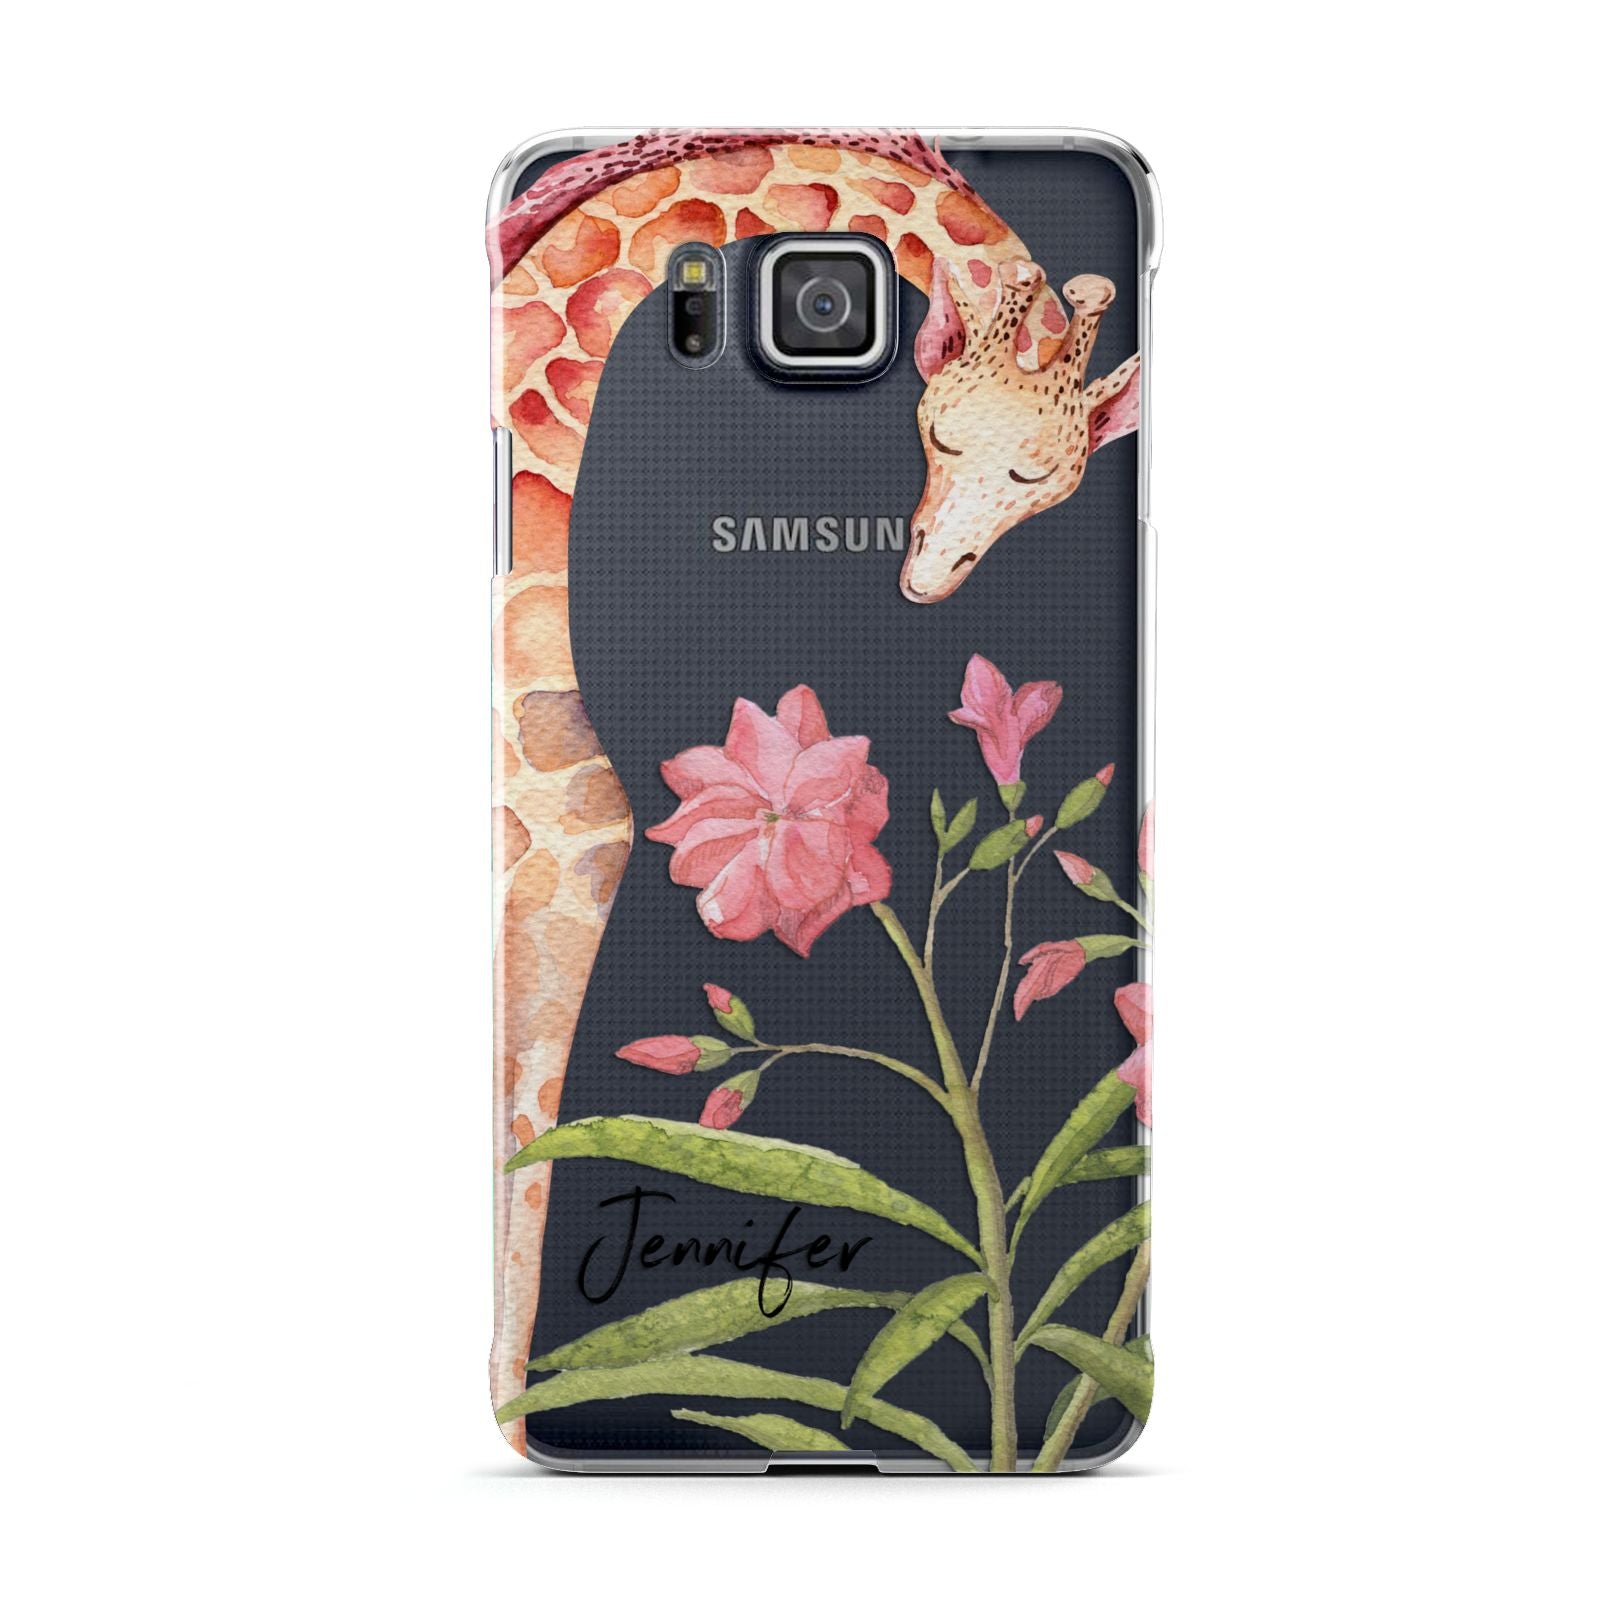 Personalised Giraffe Samsung Galaxy Alpha Case